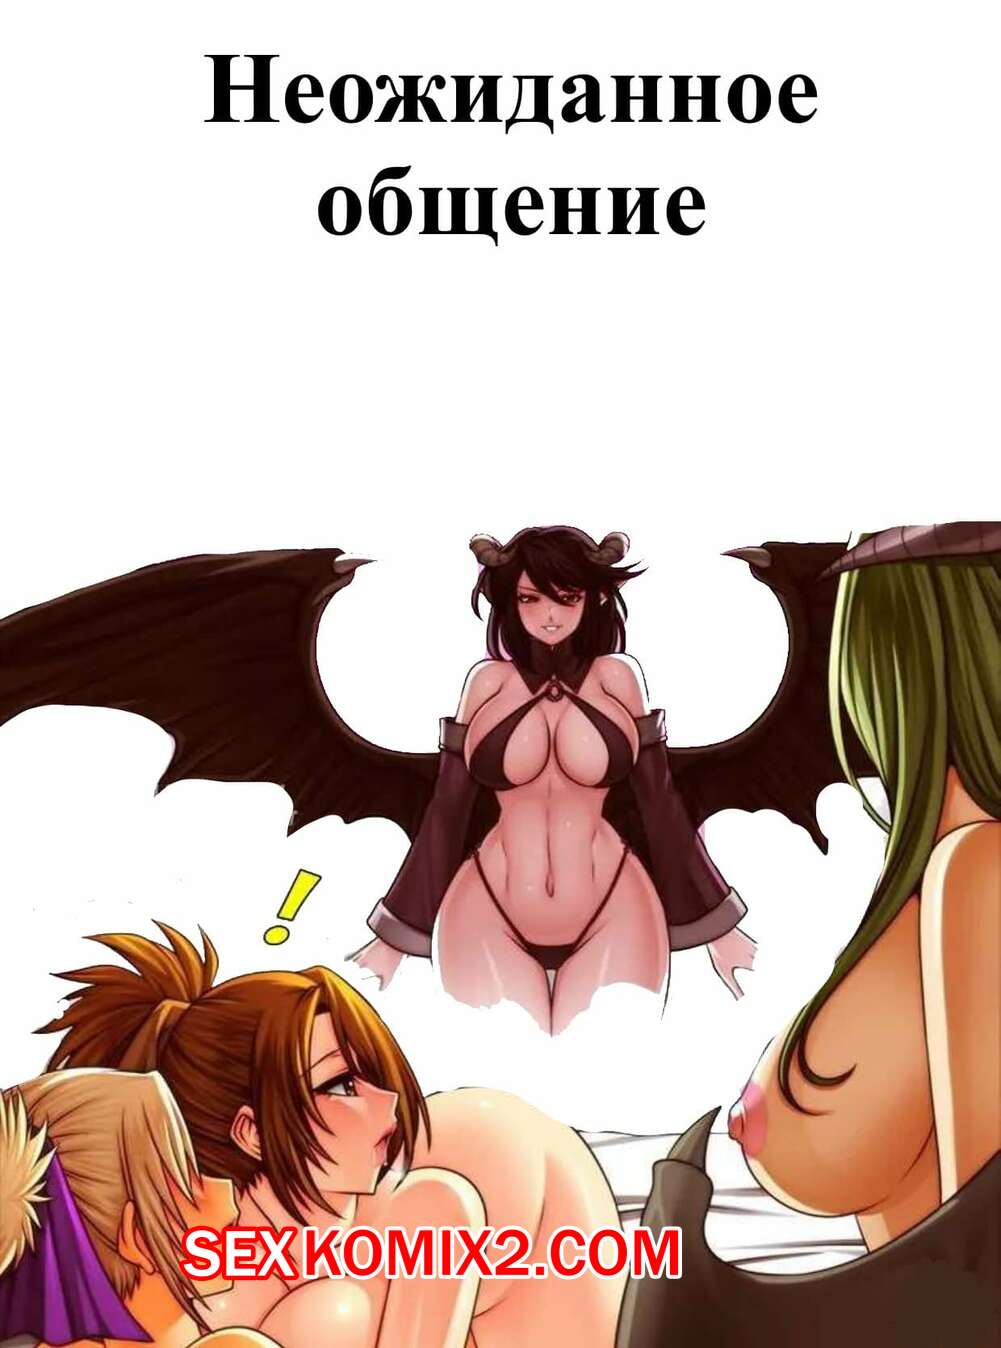 порно с демонами - экстремальный секс с демонами - altaifish.ru